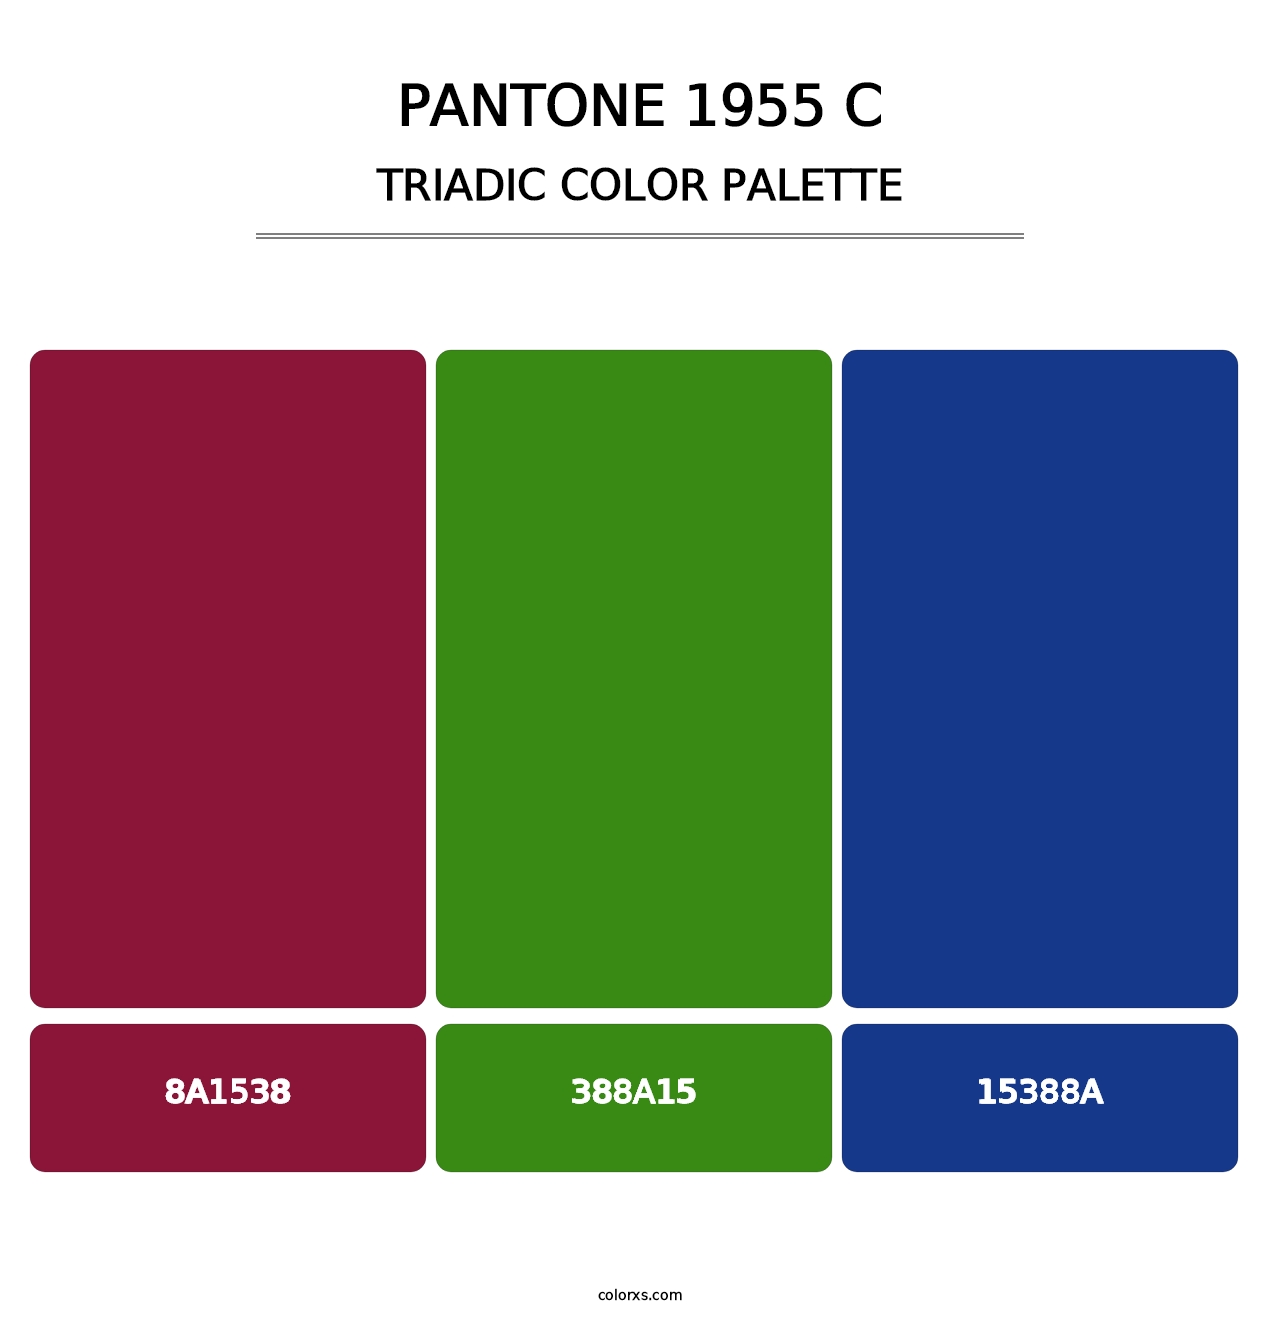 PANTONE 1955 C - Triadic Color Palette